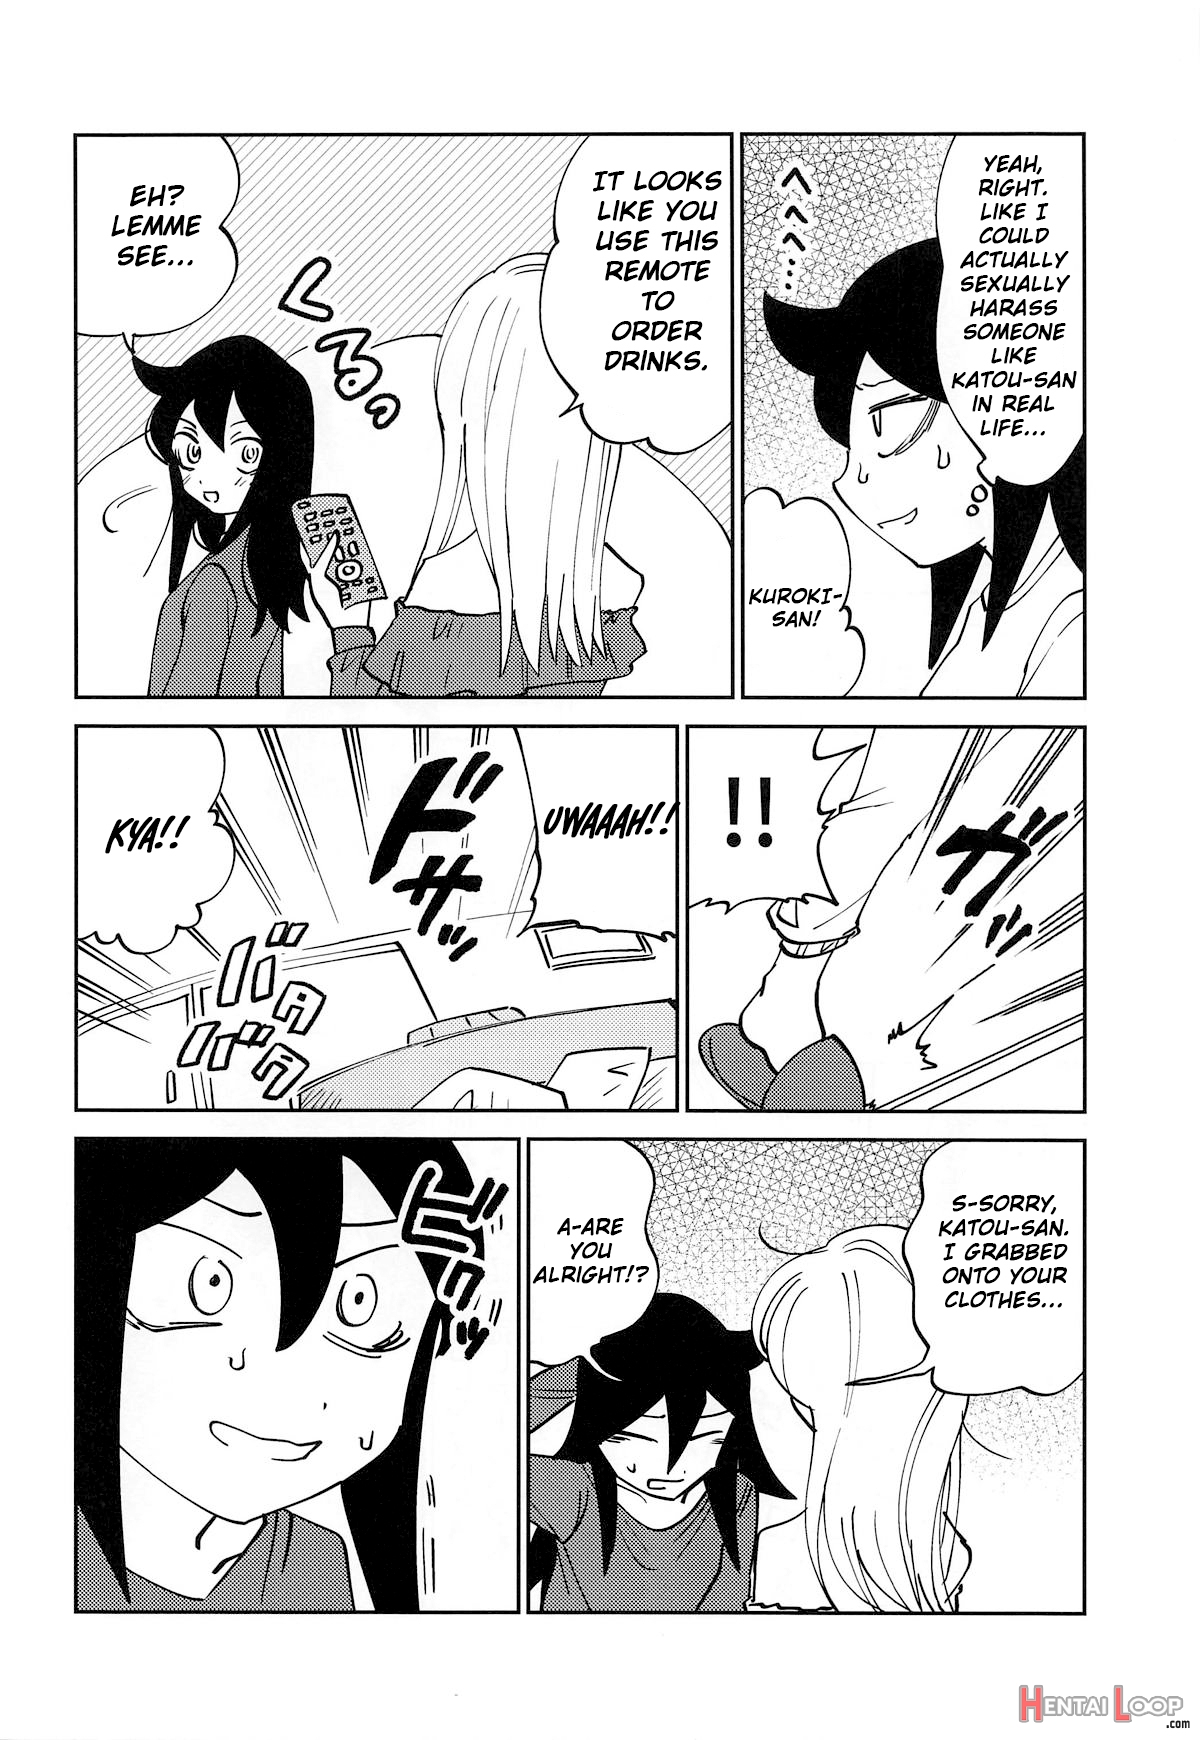 Kuroki-san, Anone. page 9